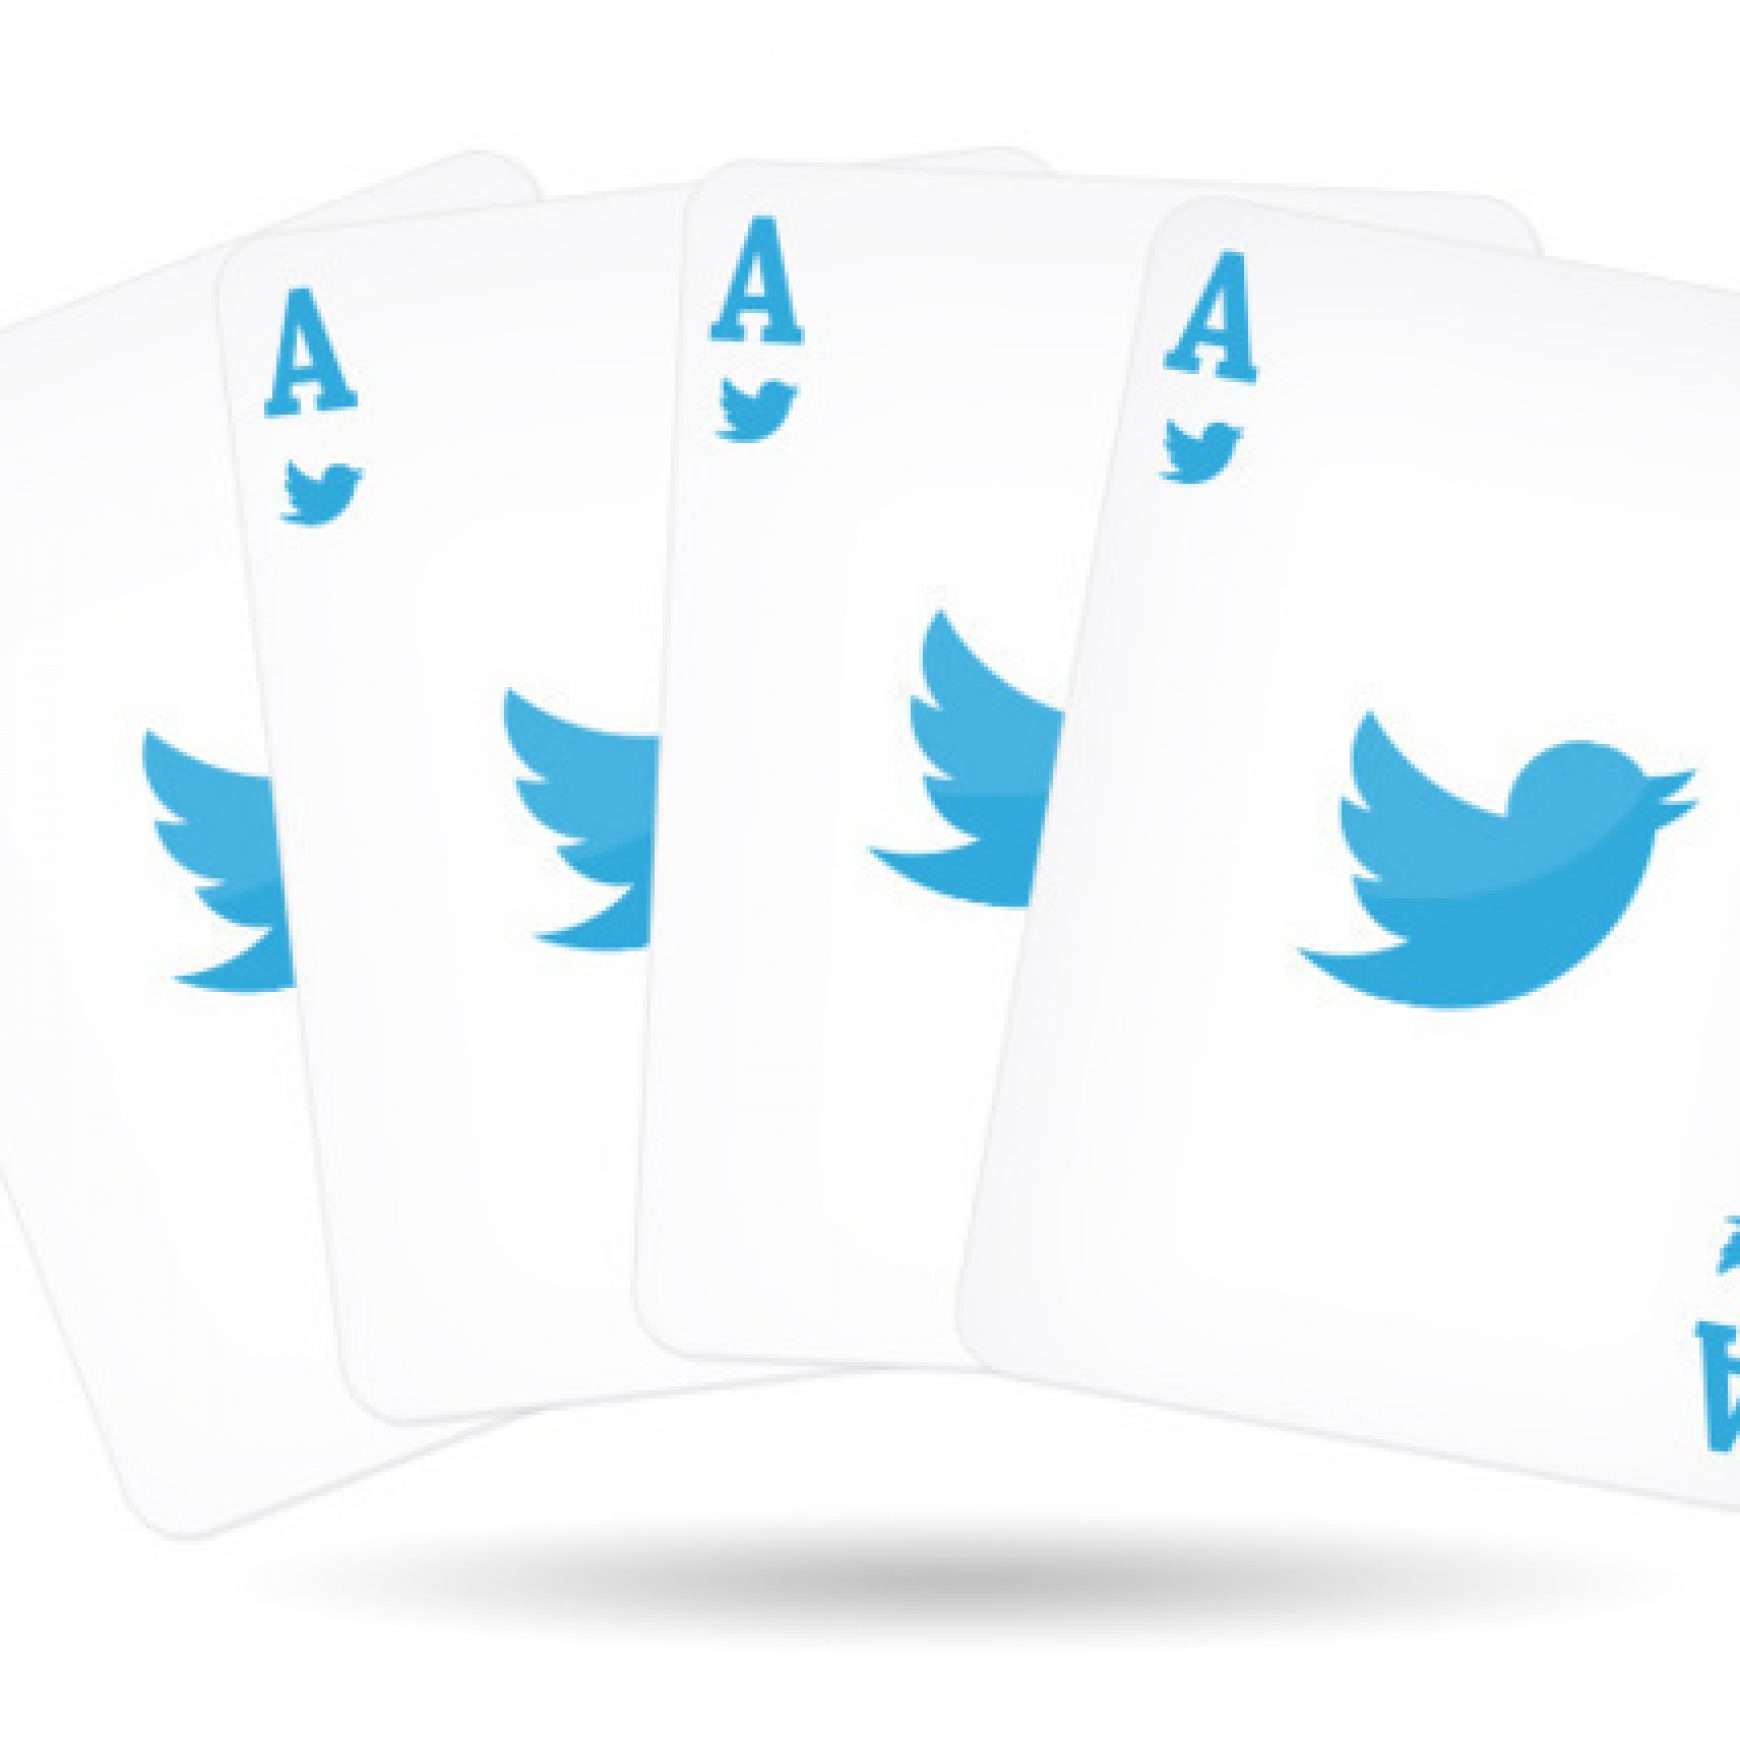 Qué son y cómo aprovechar Twitter Cards en tu estrategia de marketing